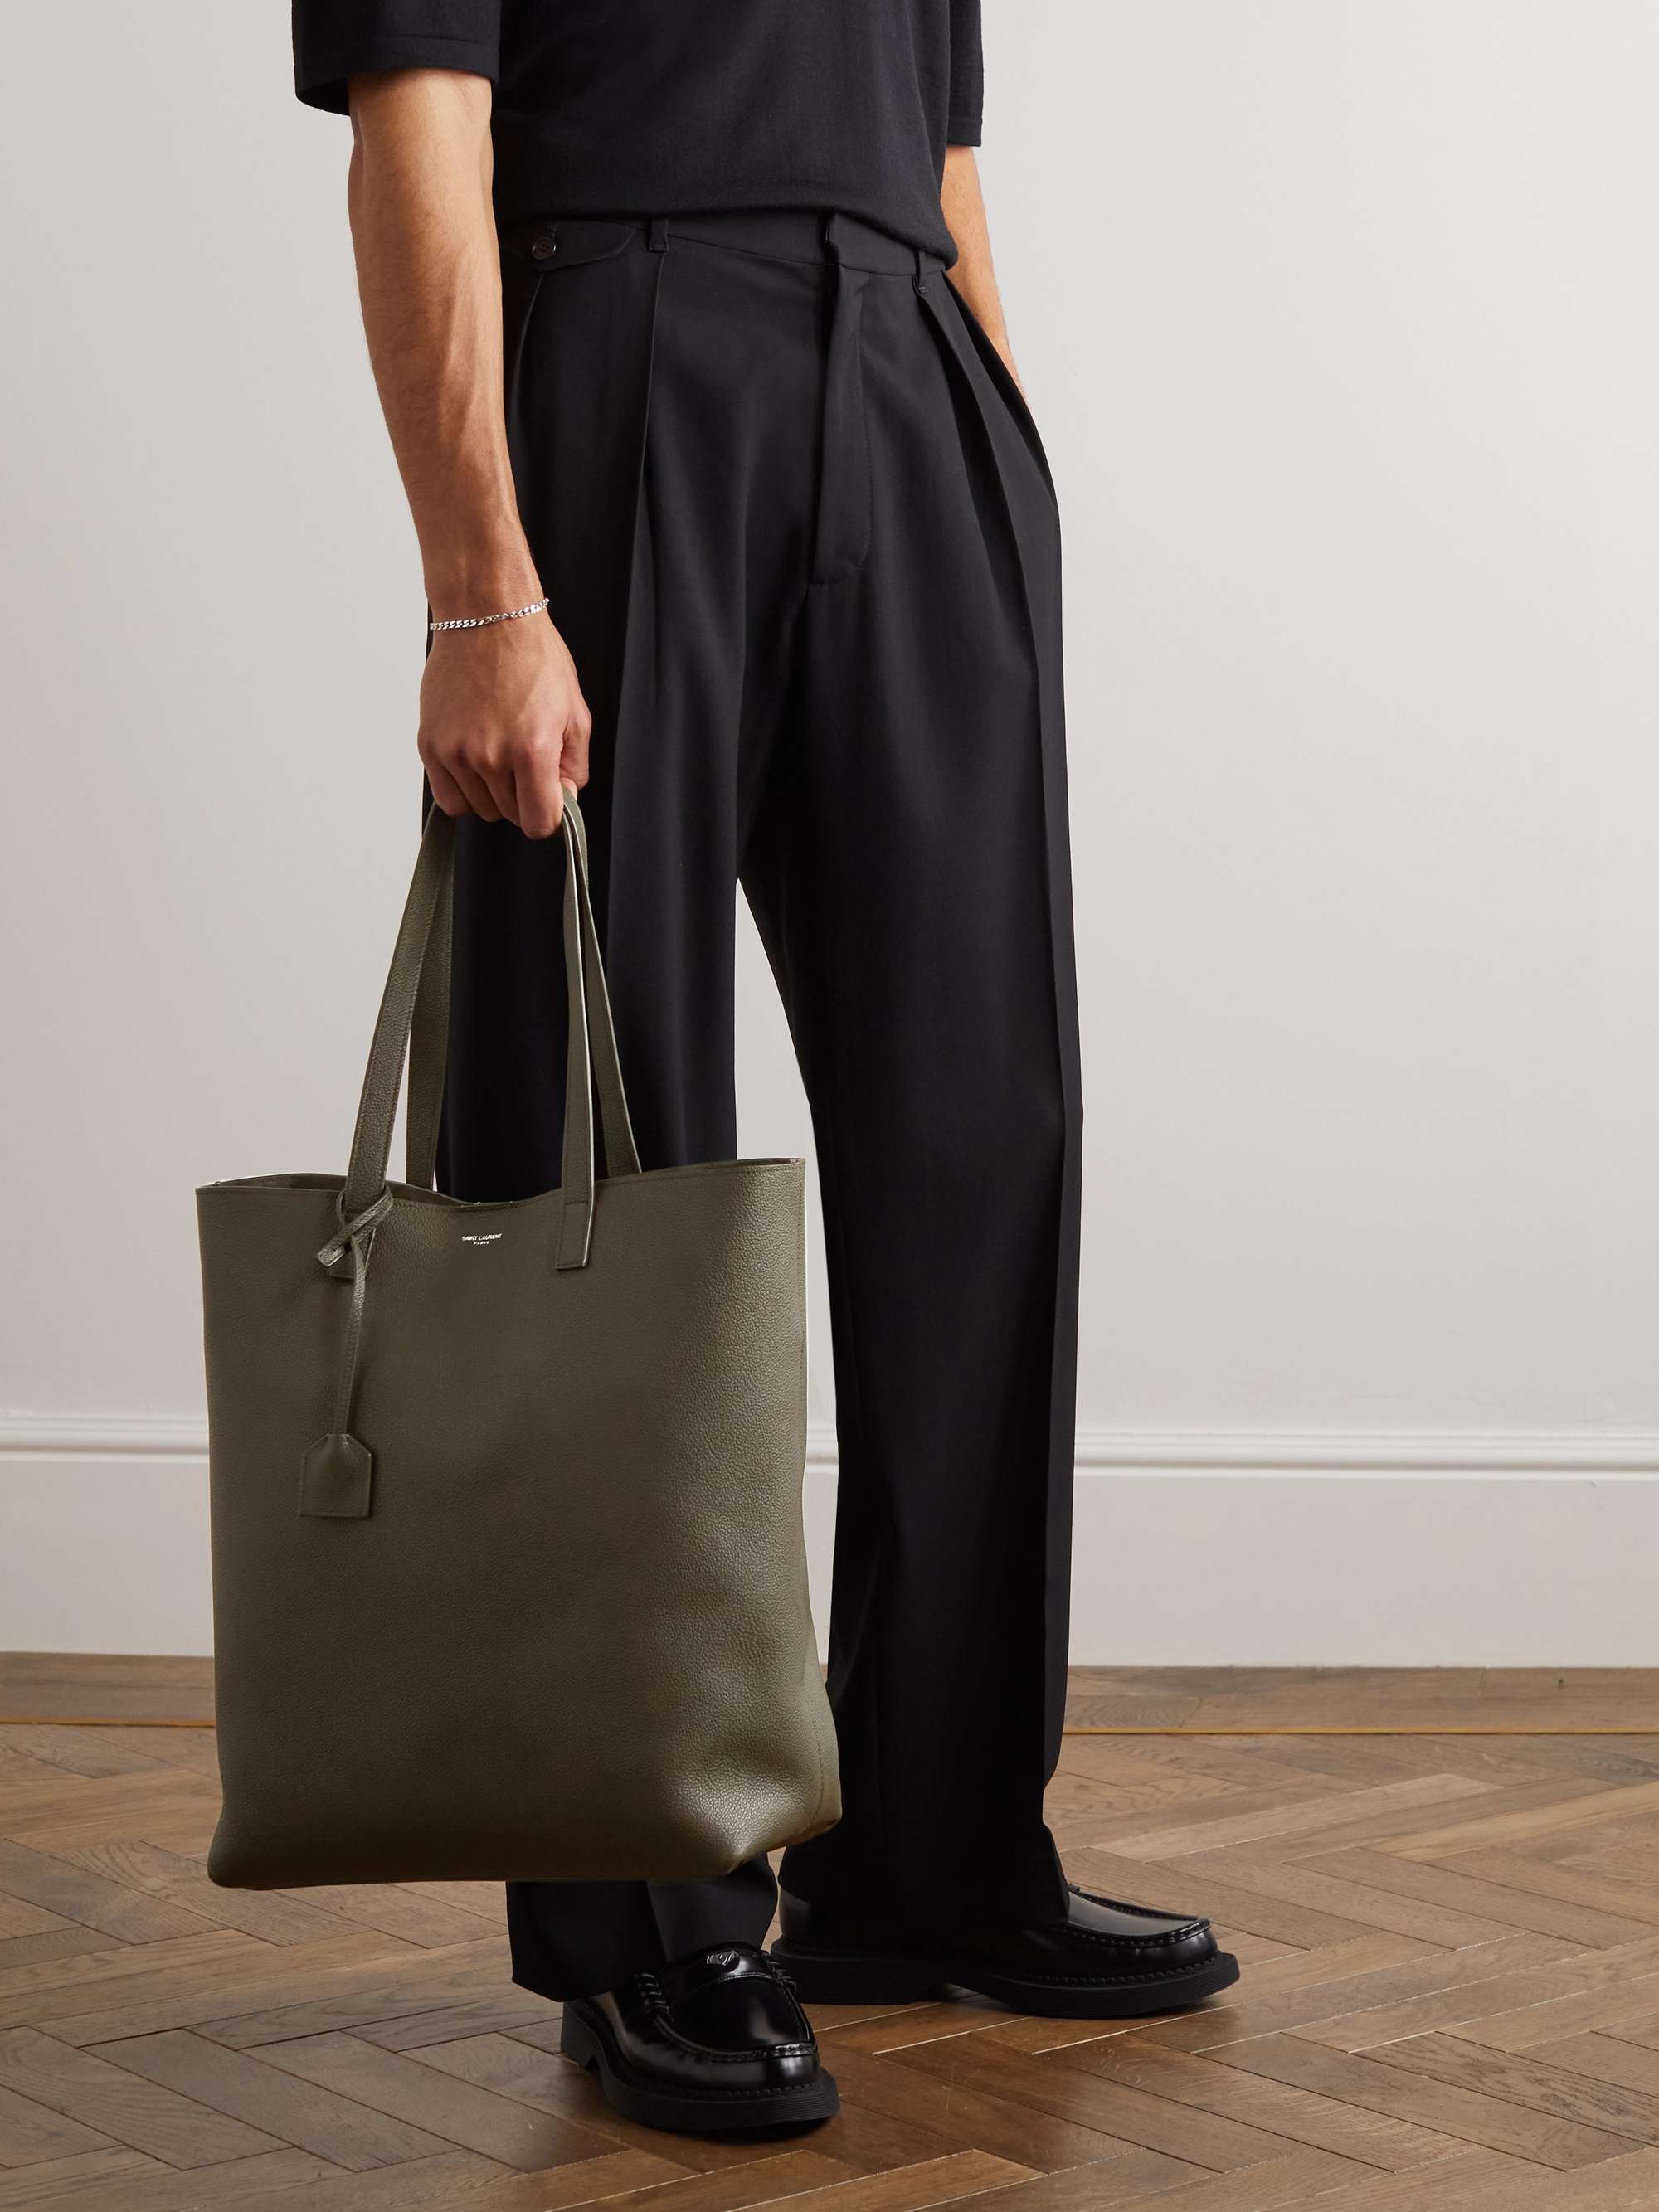 SAINT LAURENT Bold Textured-Leather Tote Bag for Men | MR PORTER